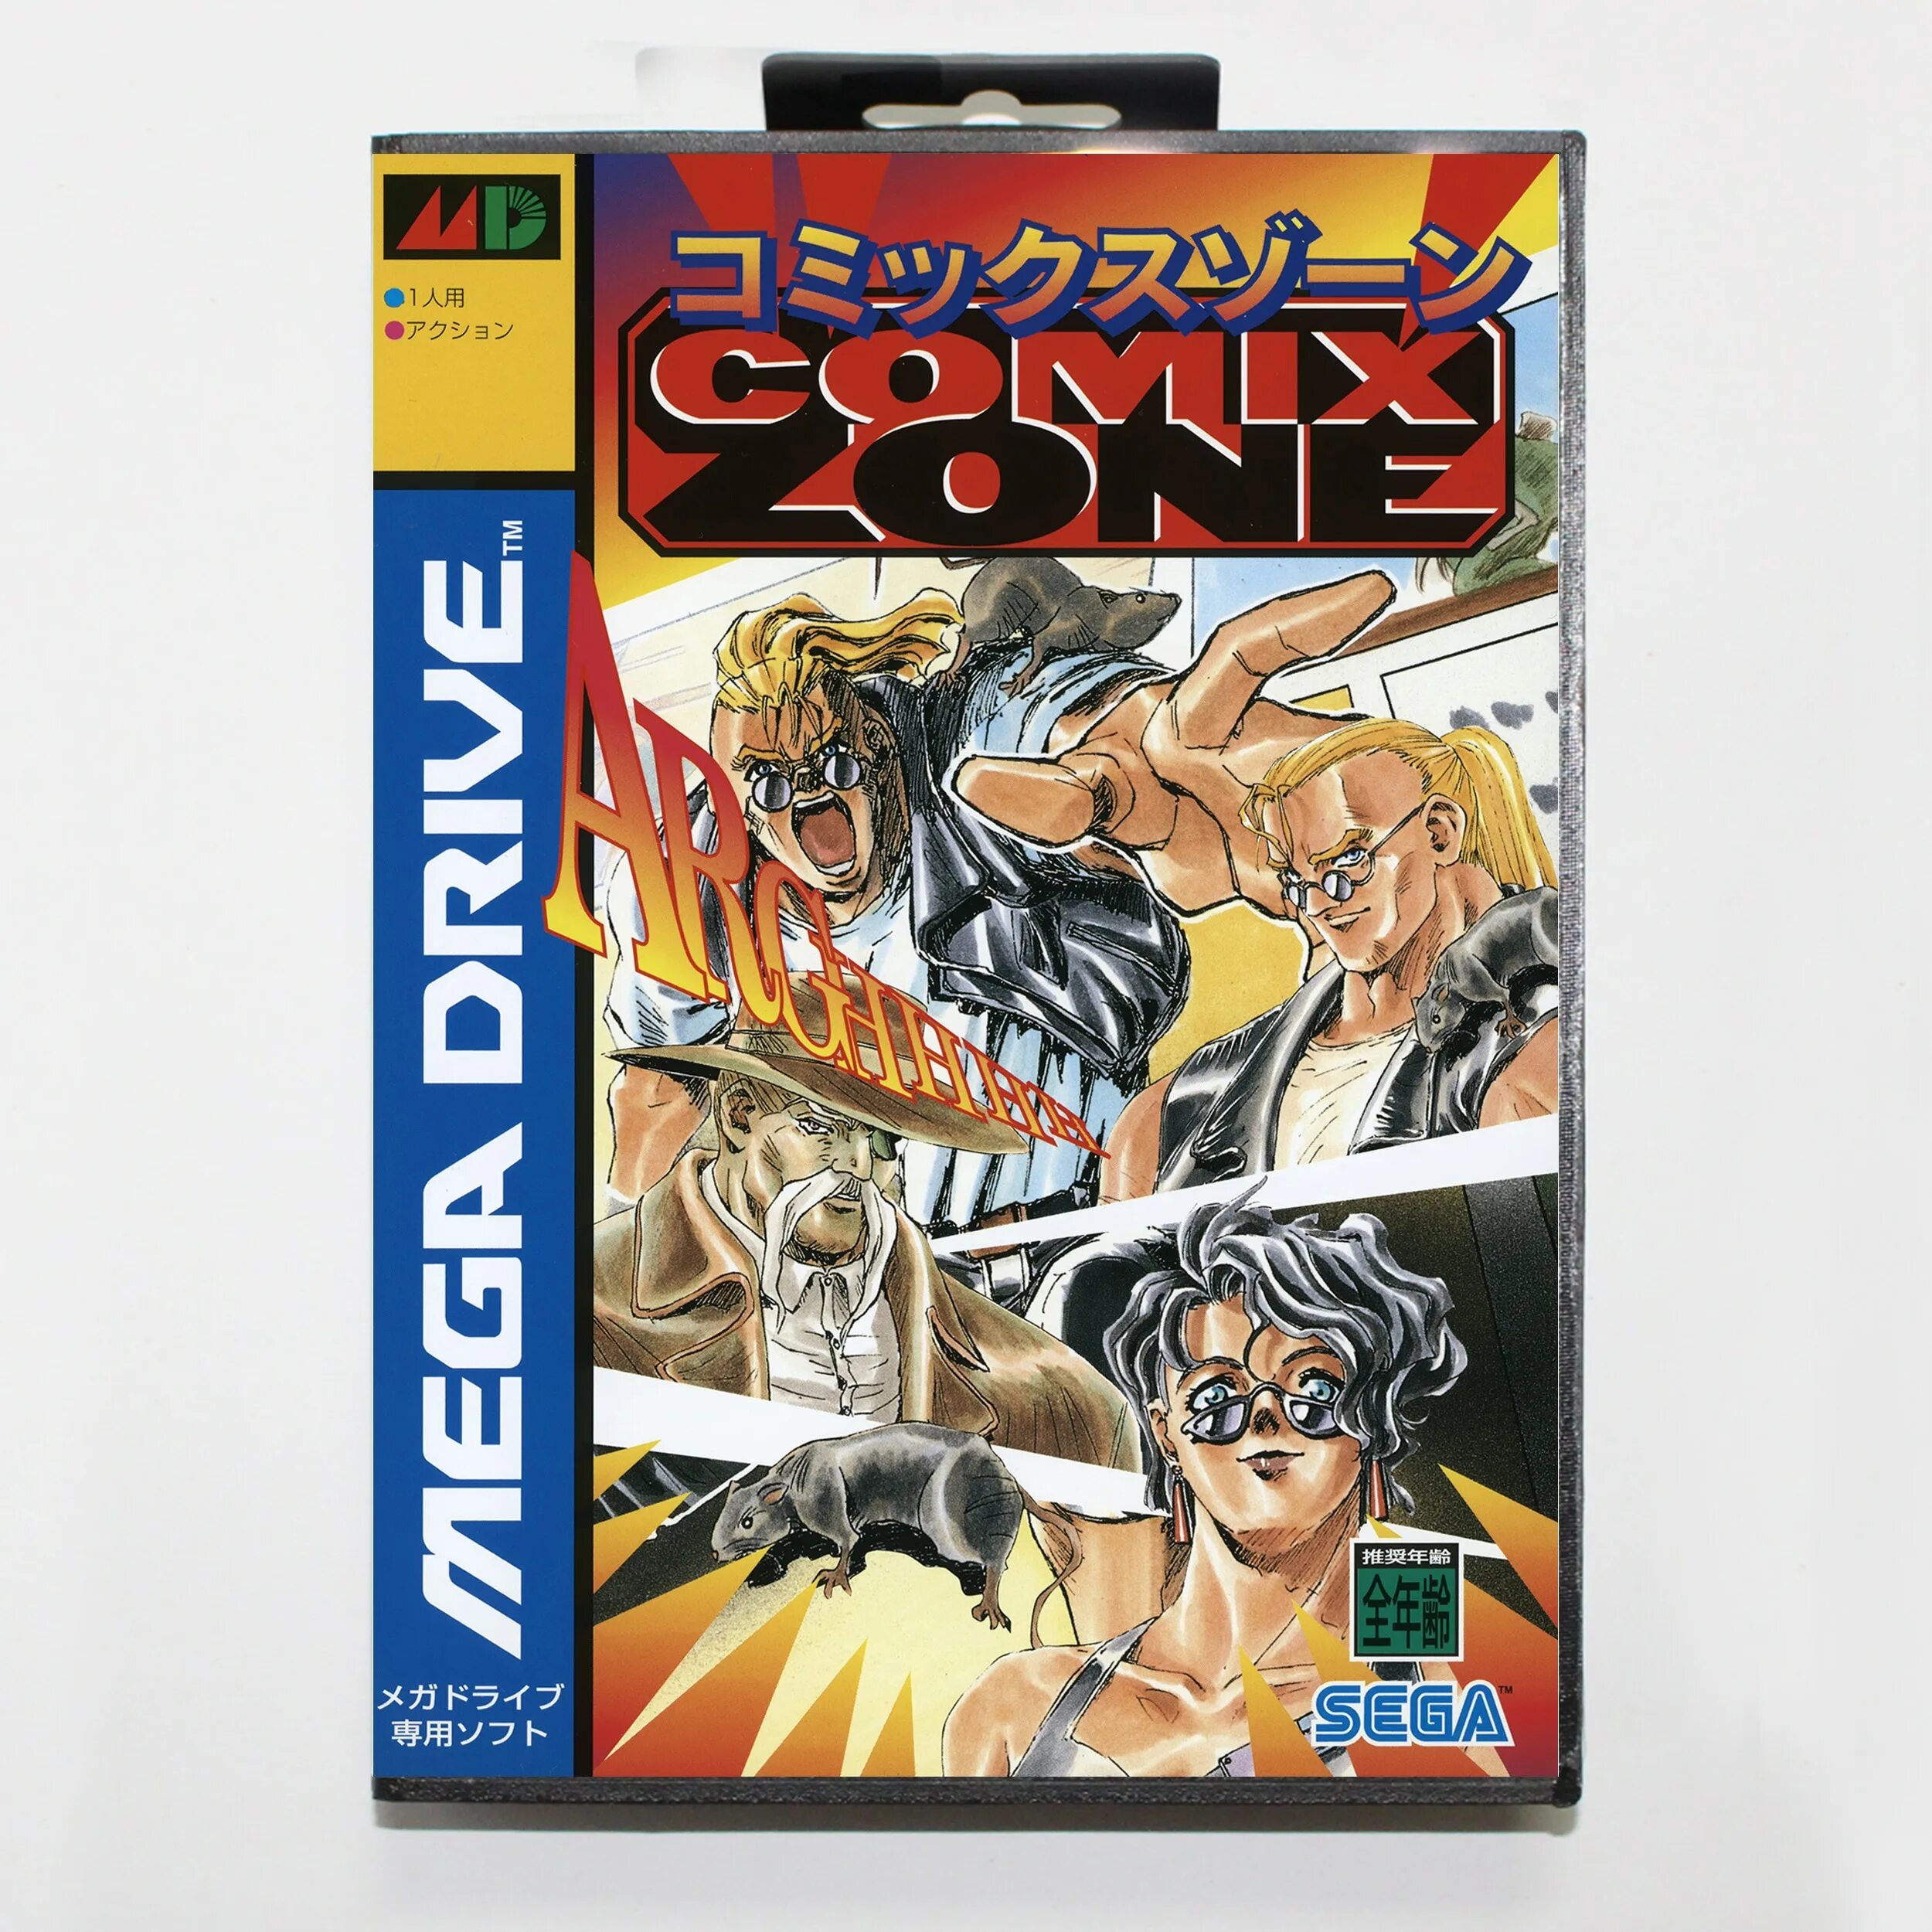 Игра на сега комикс. Comics Zone игра. Sega Mega Drive comix Zone. Комикс зон сега обложка. Обложка для игры Sega comix Zone.